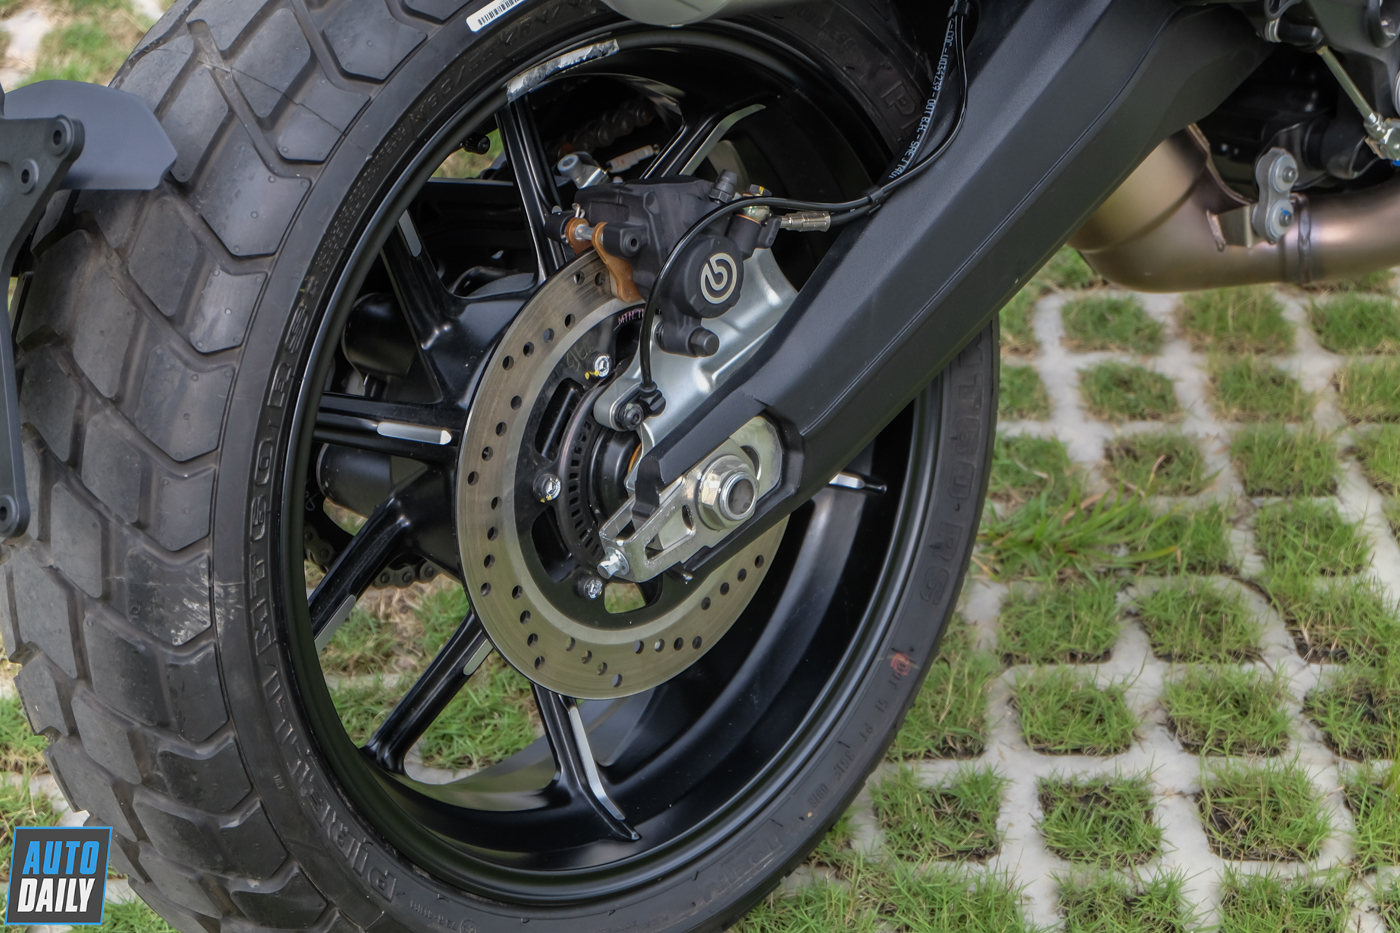 Ducati%20Scrambler%201100%20Sport%20Pro%202020%20(42).JPG